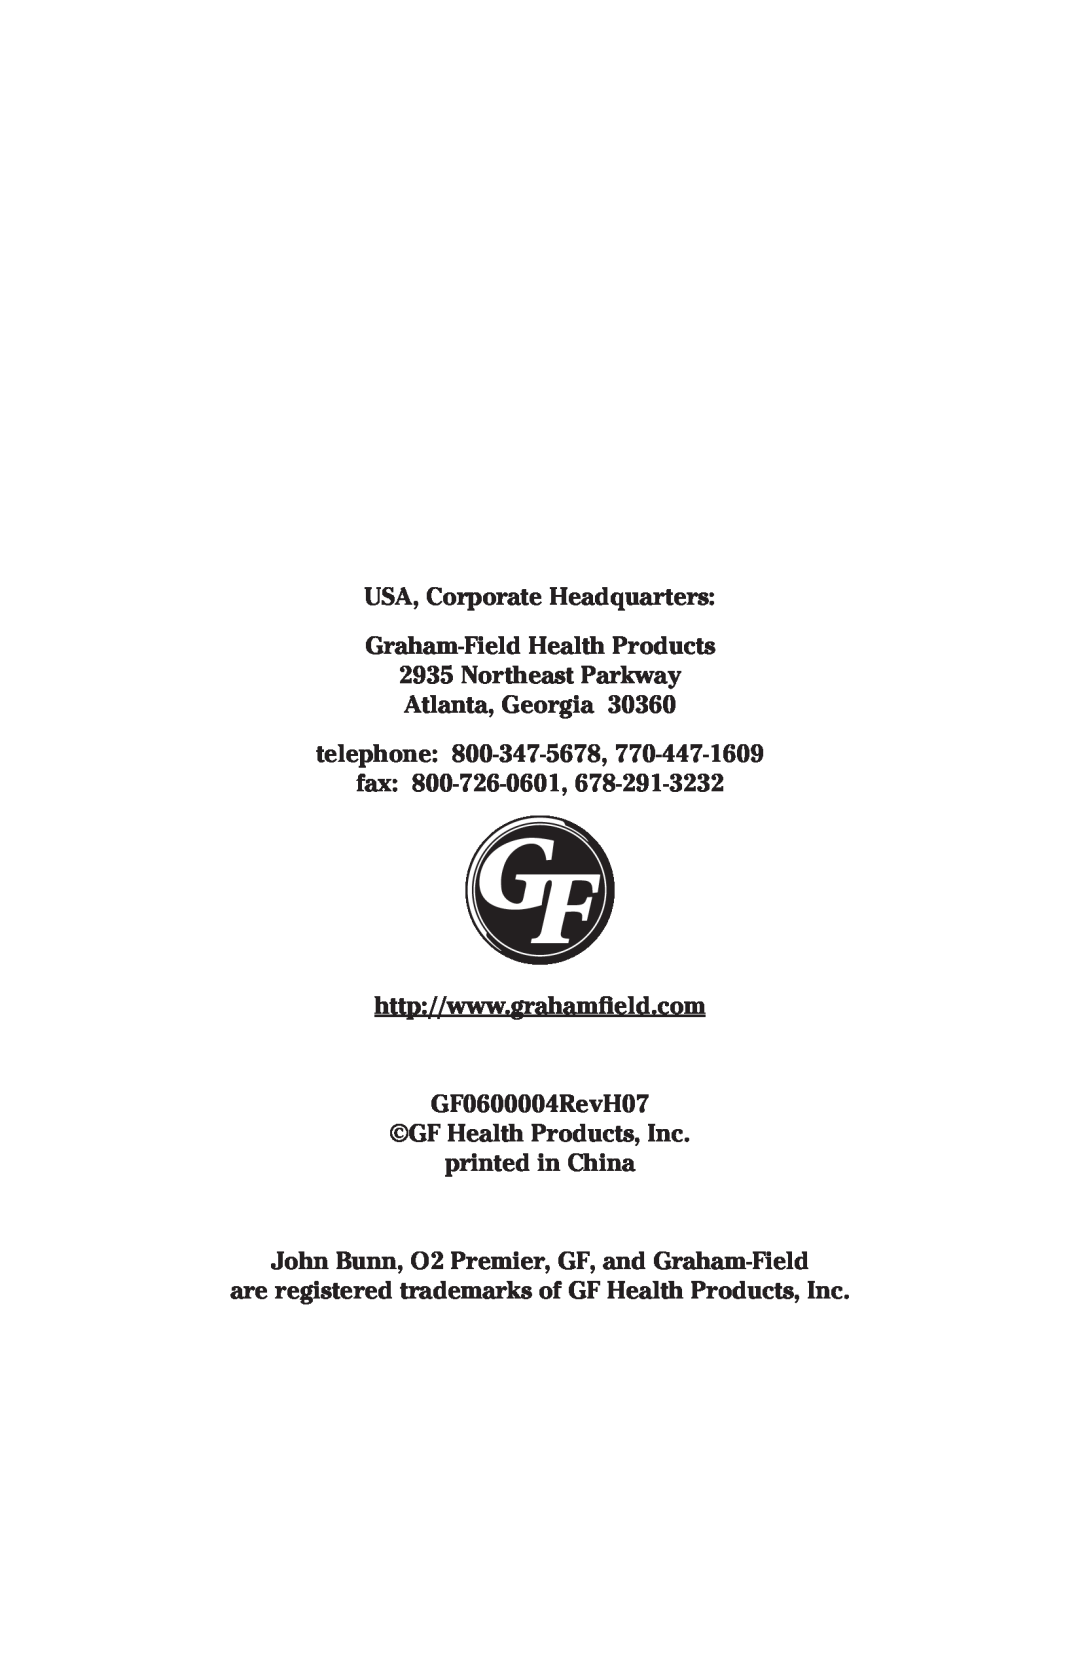 Graham Field JB0160-010-220, JB0160-015B-220 USA, Corporate Headquarters Graham-Field Health Products, fax 800-726-0601 